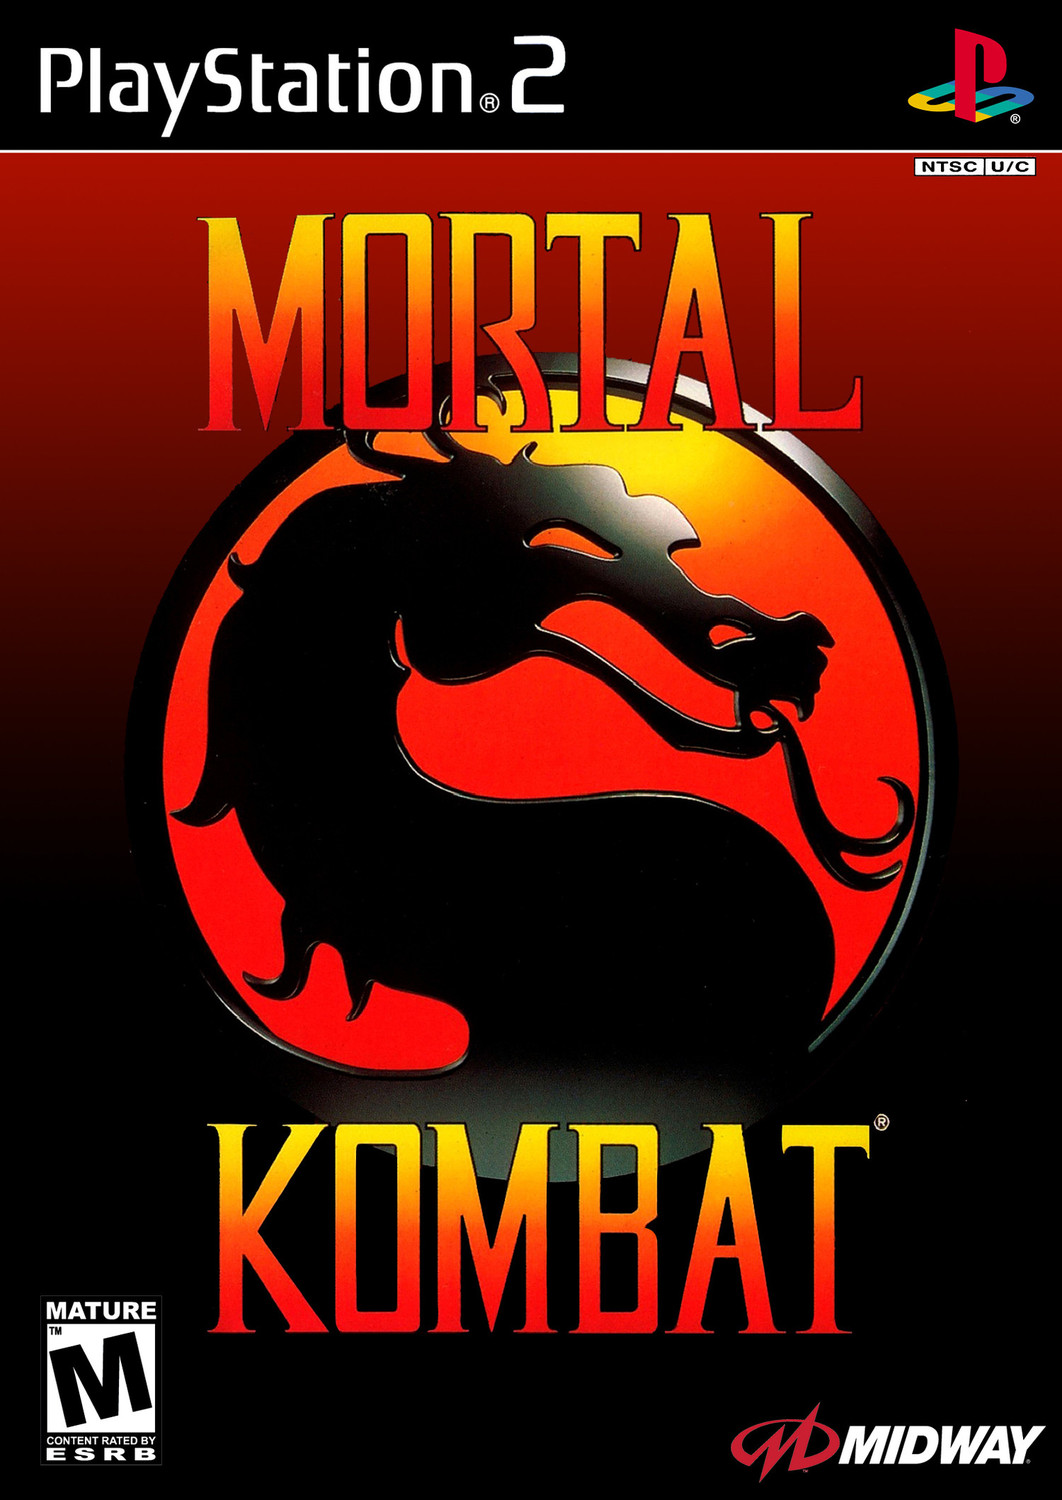 Mortal Kombat - Playstation 2: PS2 game